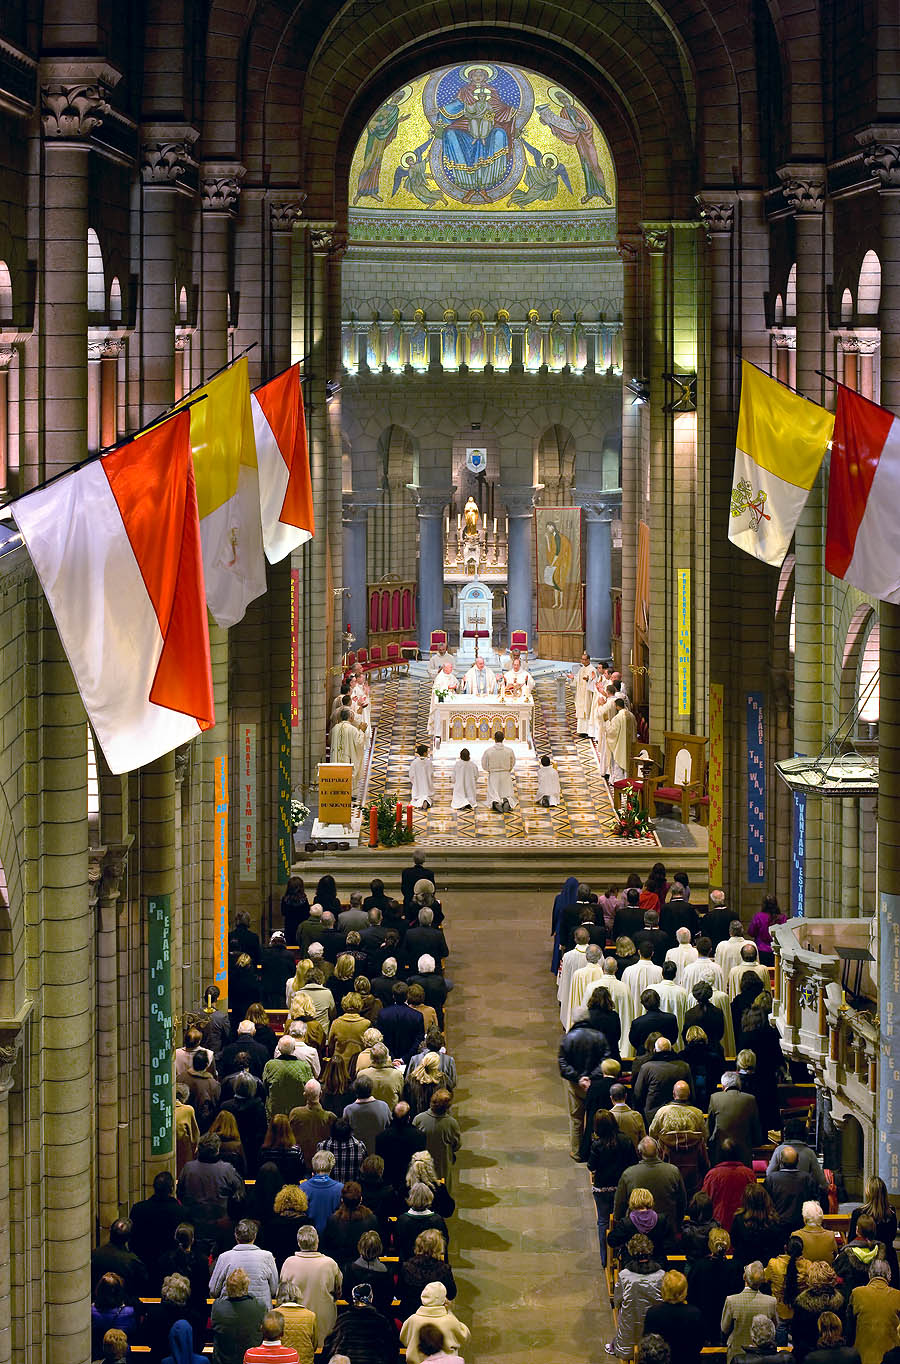 Monaco Cathedral interior. Eucharistic celebration in the presence of the Archbishop, Monsignor Bernard Barsi